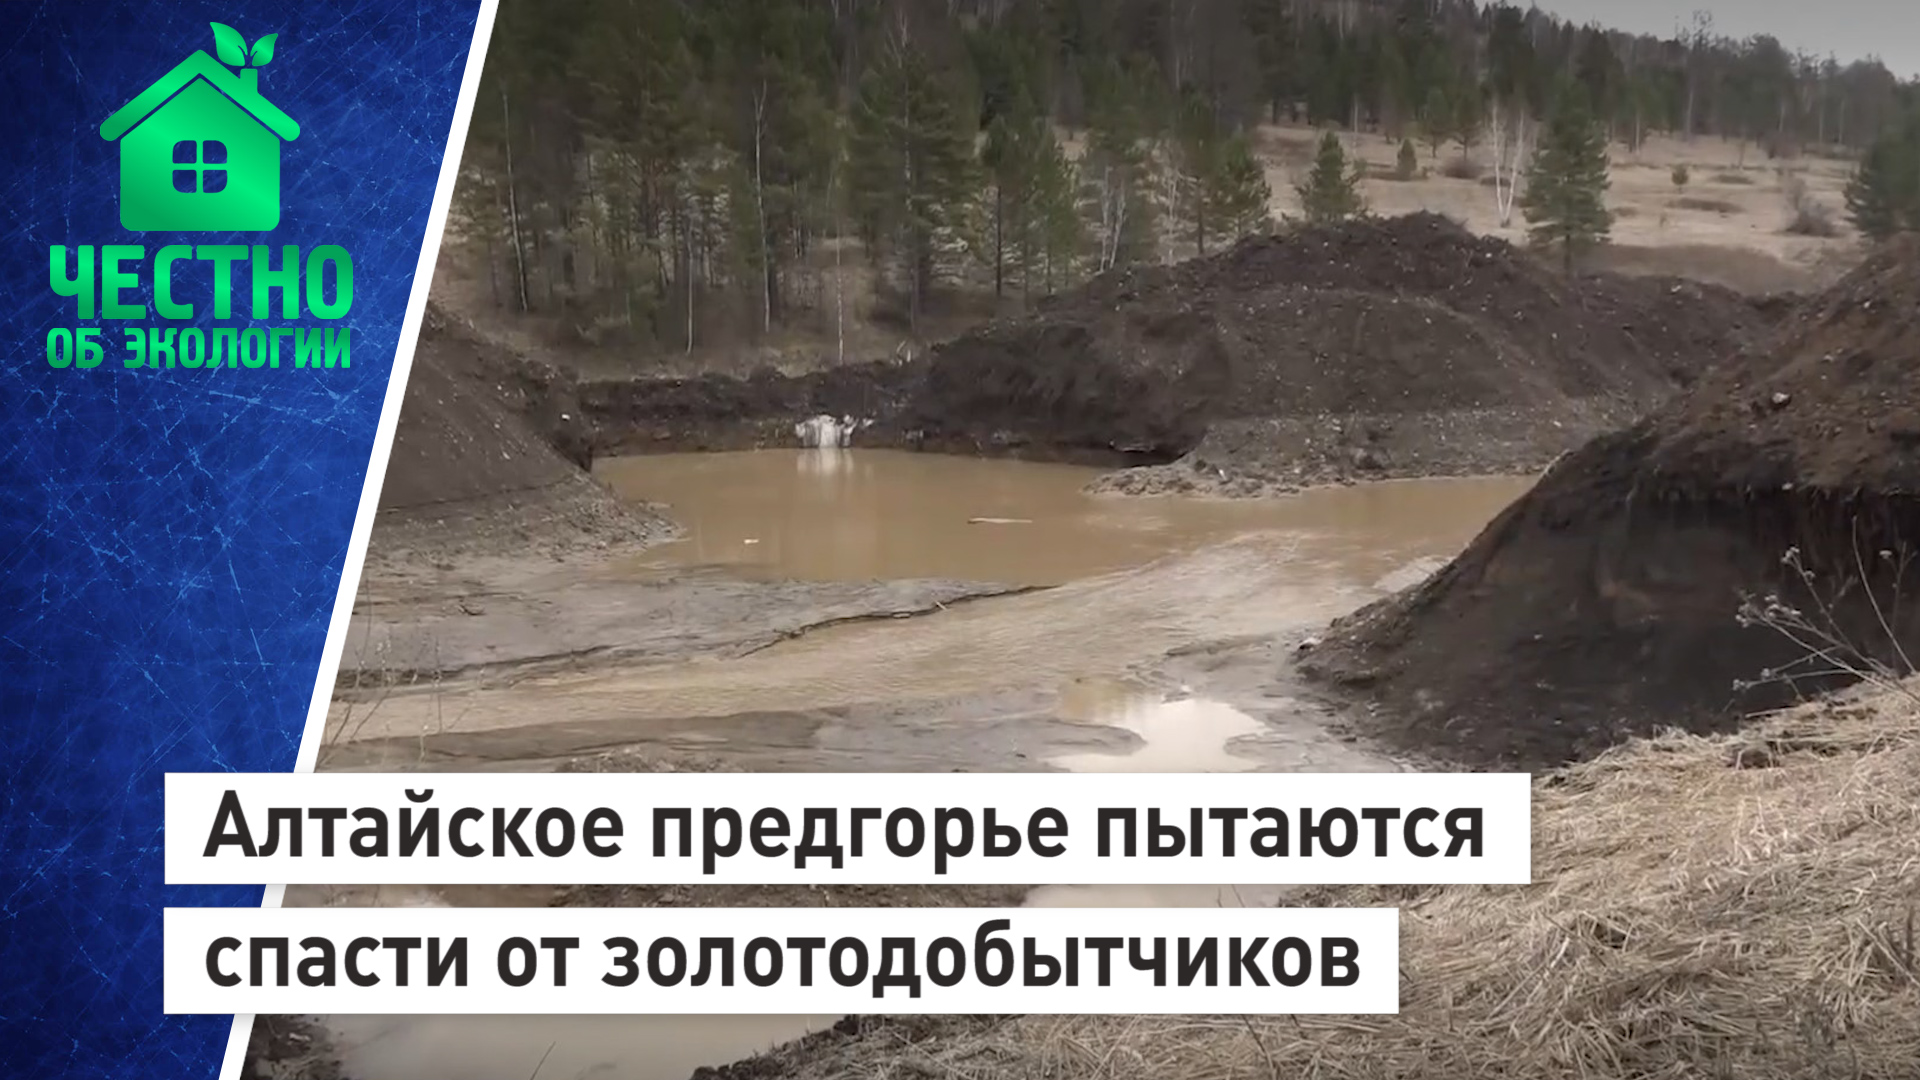 Алтайское предгорье пытаются спасти от золотодобытчиков